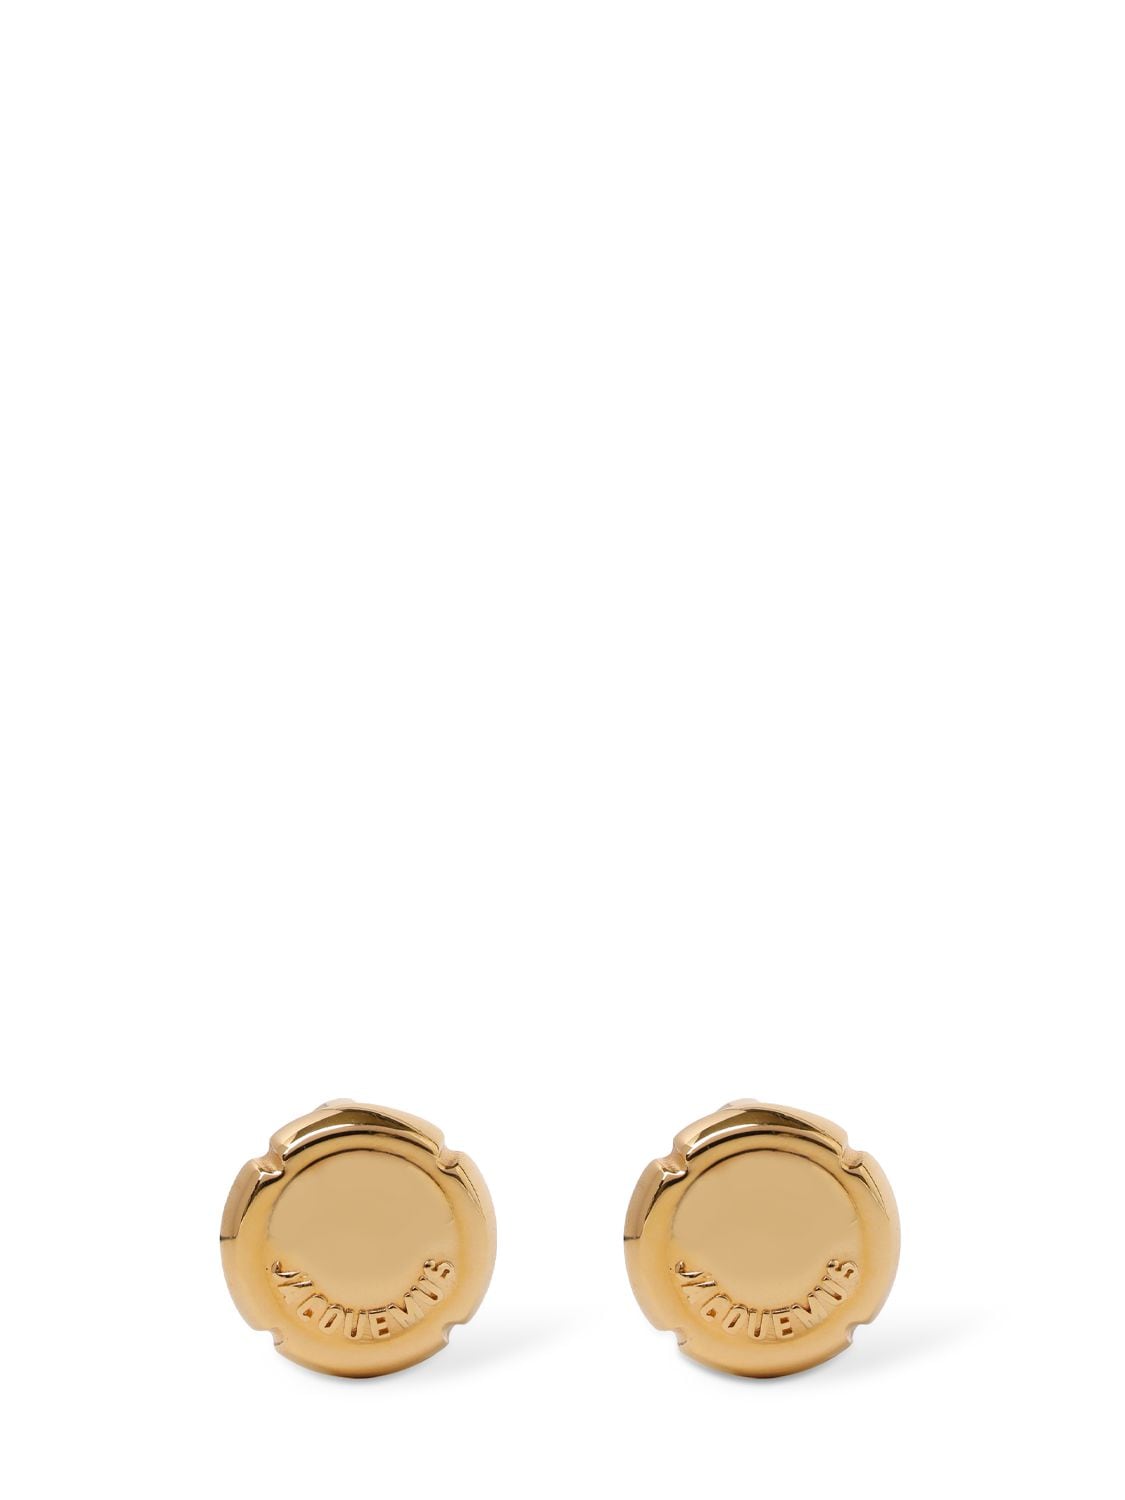 Jacquemus Les Festiva Stud Earrings In Light Gold